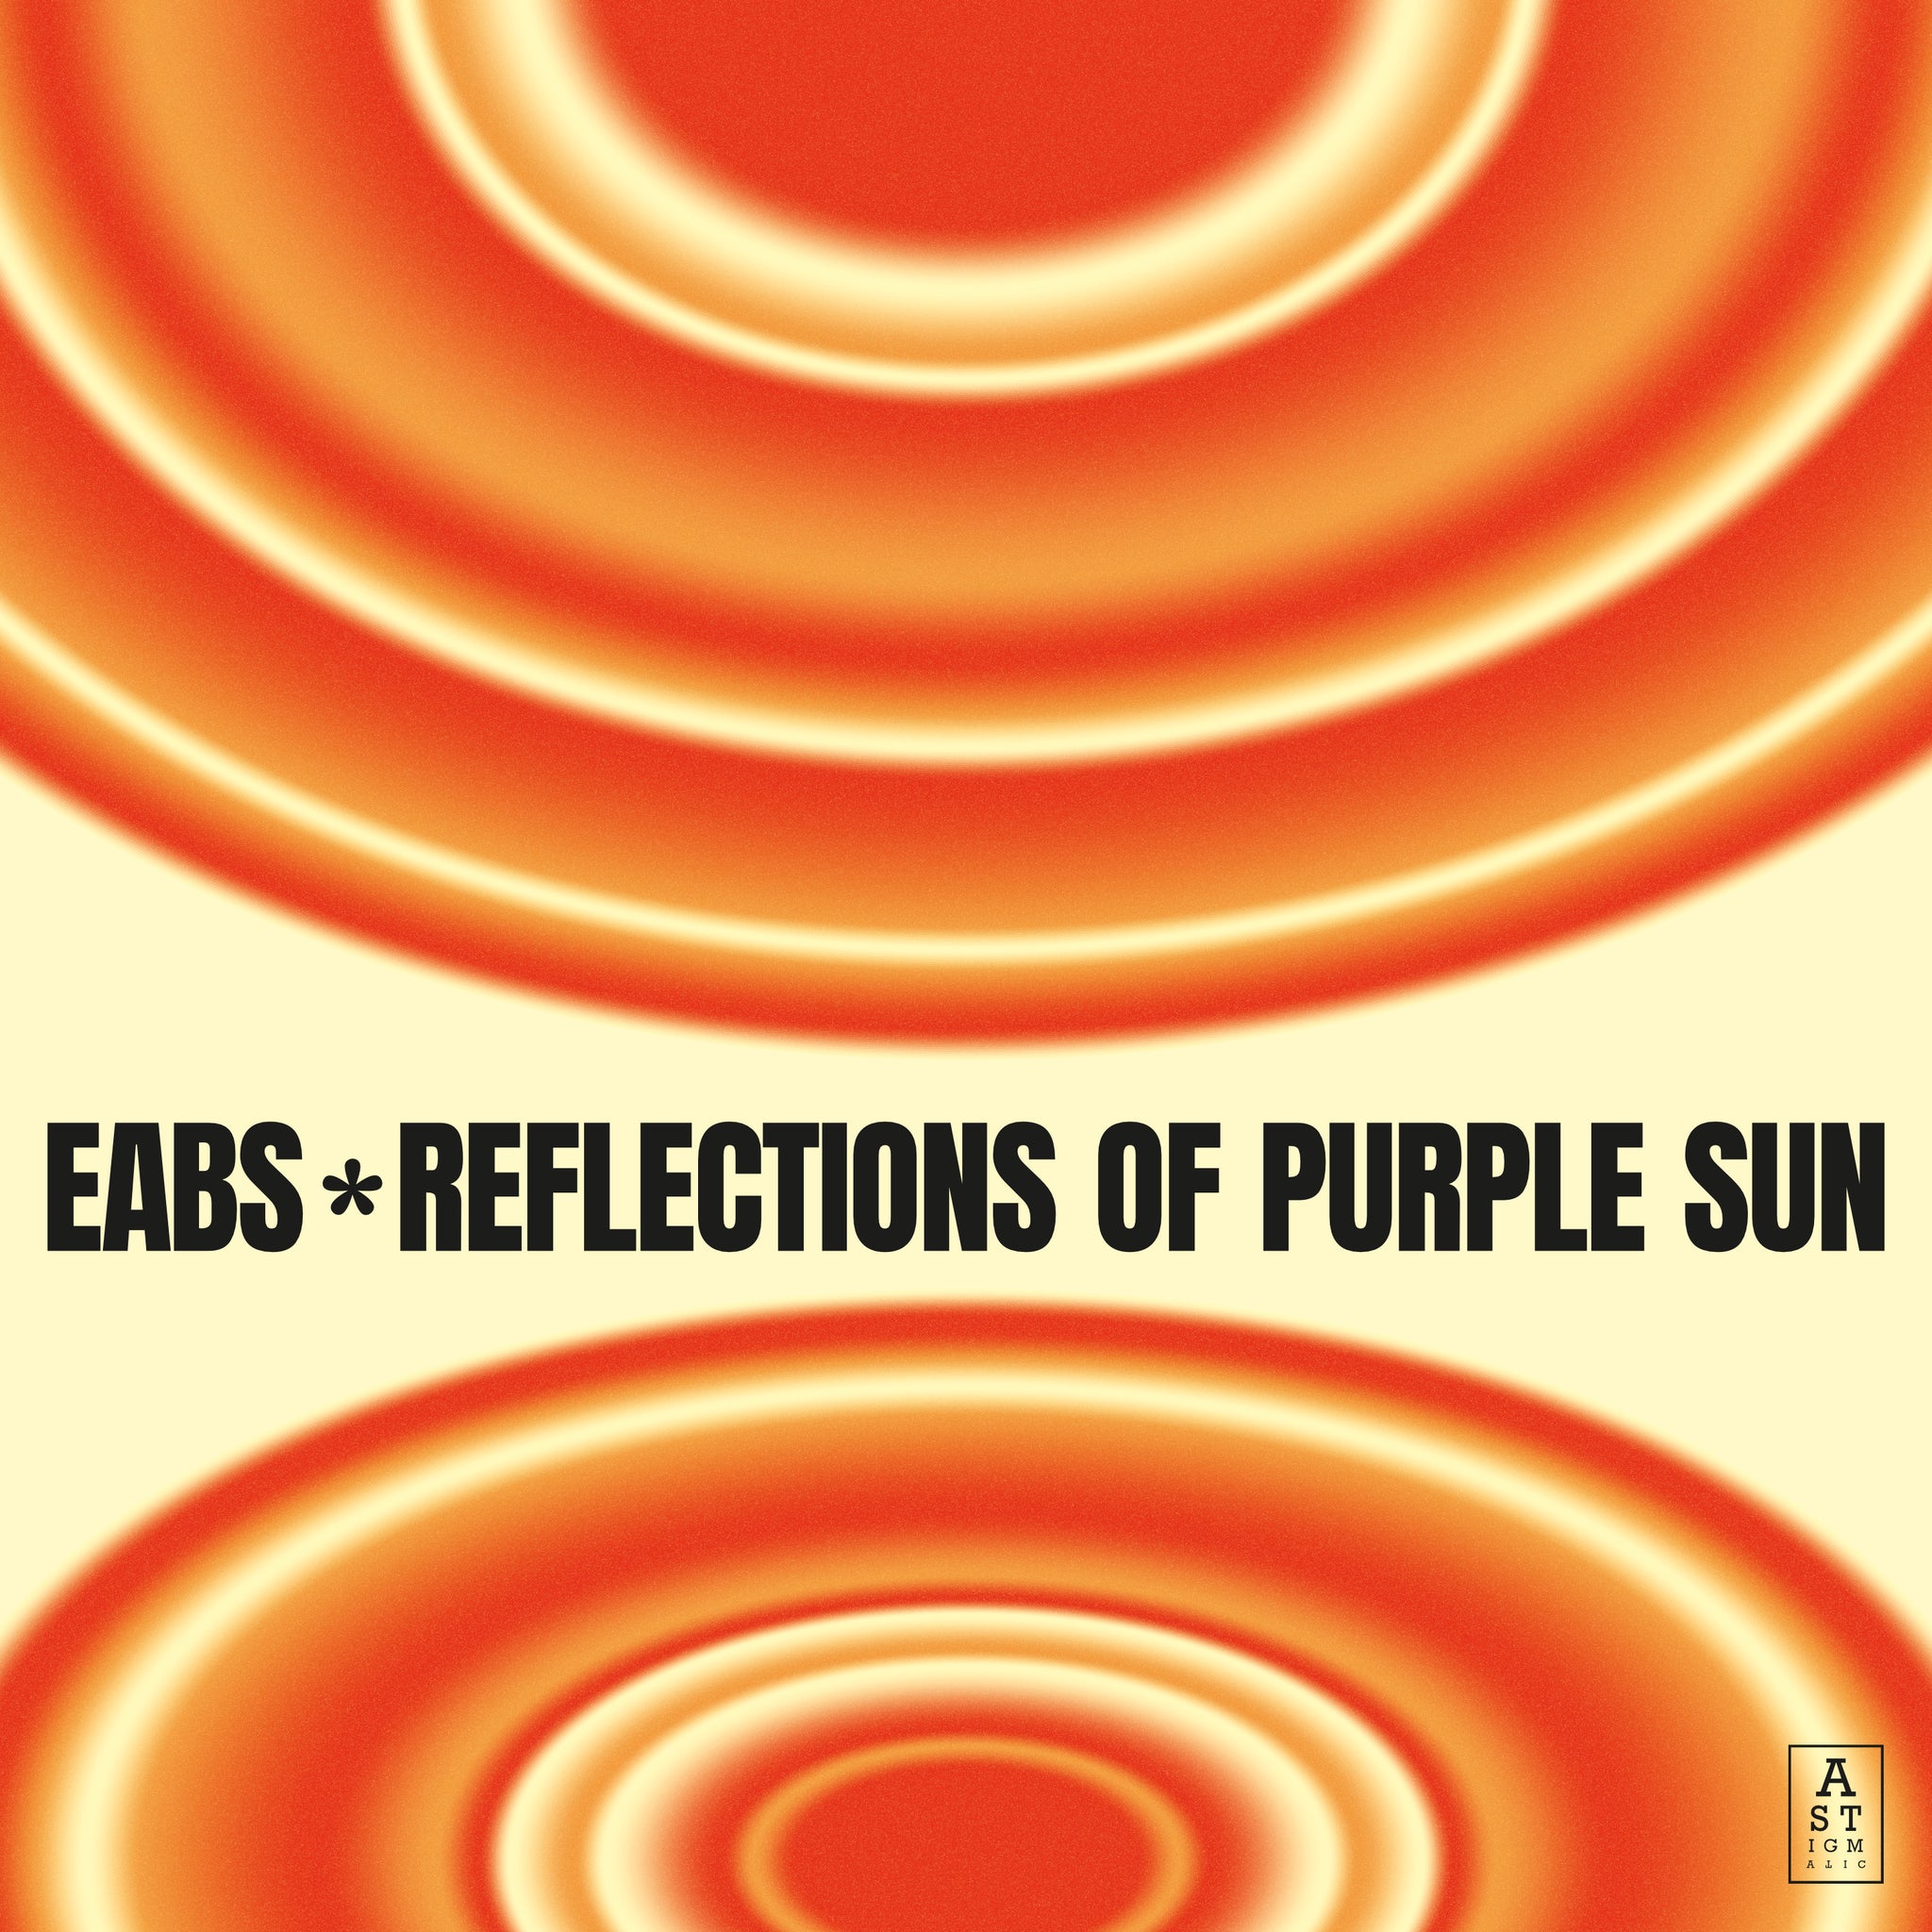 Okładka płyty CD zespołu EABS Reflections of purple sun